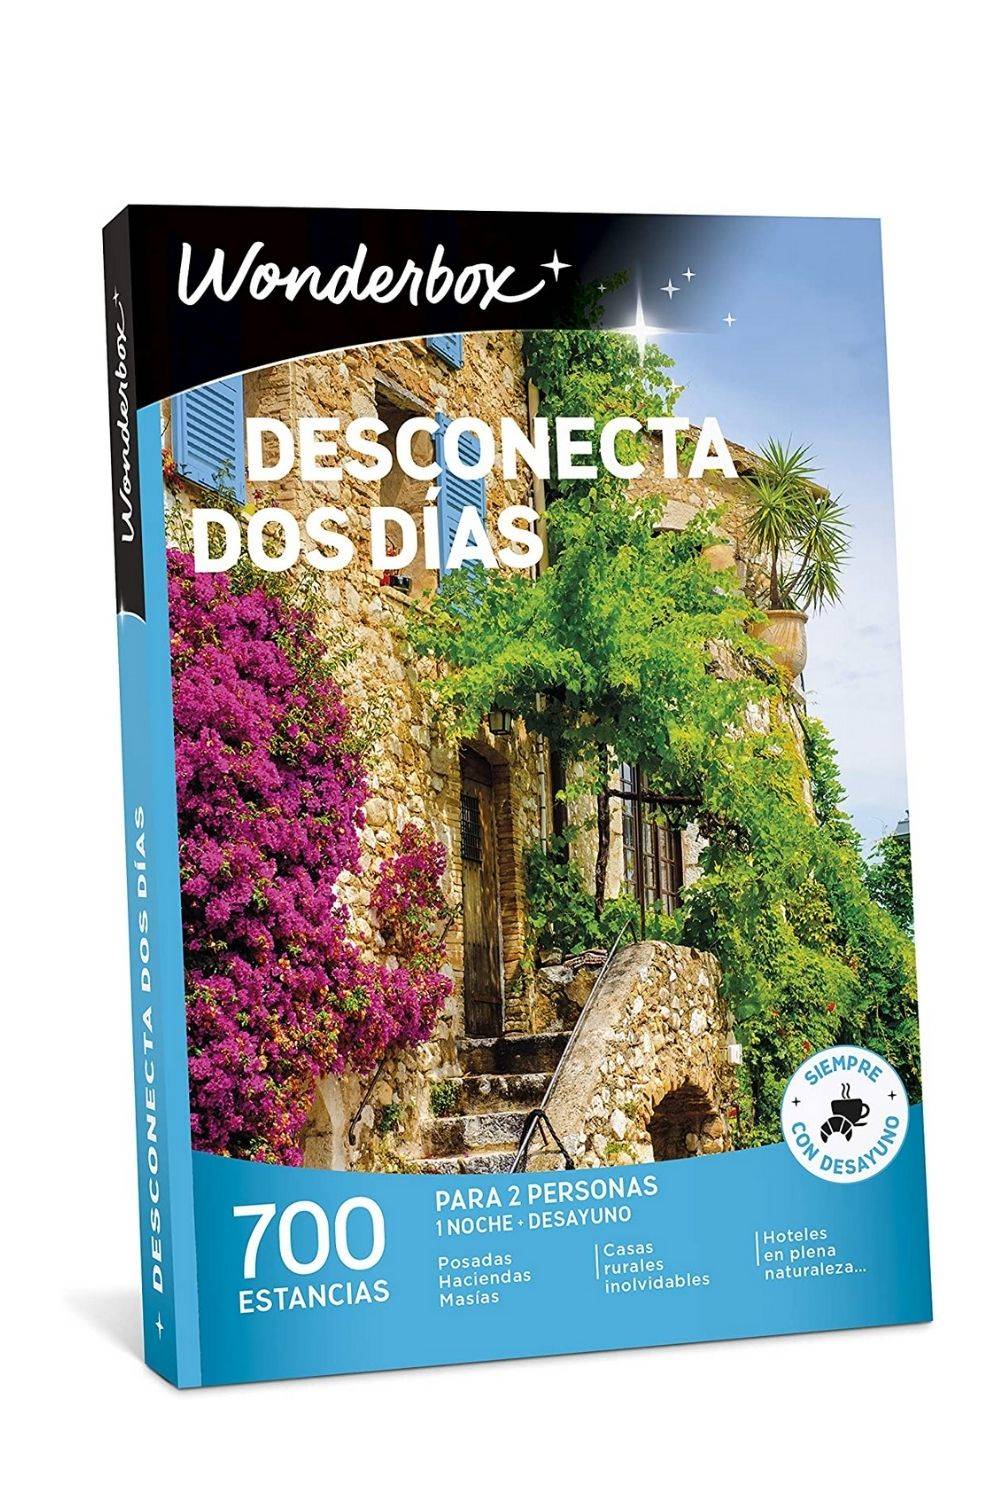 WONDERBOX Caja Regalo -DESCONECTA Dos DÍAS- 700 estancias Rurales para Dos Personas en haciendas, masías, Casas Rurales inolvidables, hoteles en Plena Naturaleza